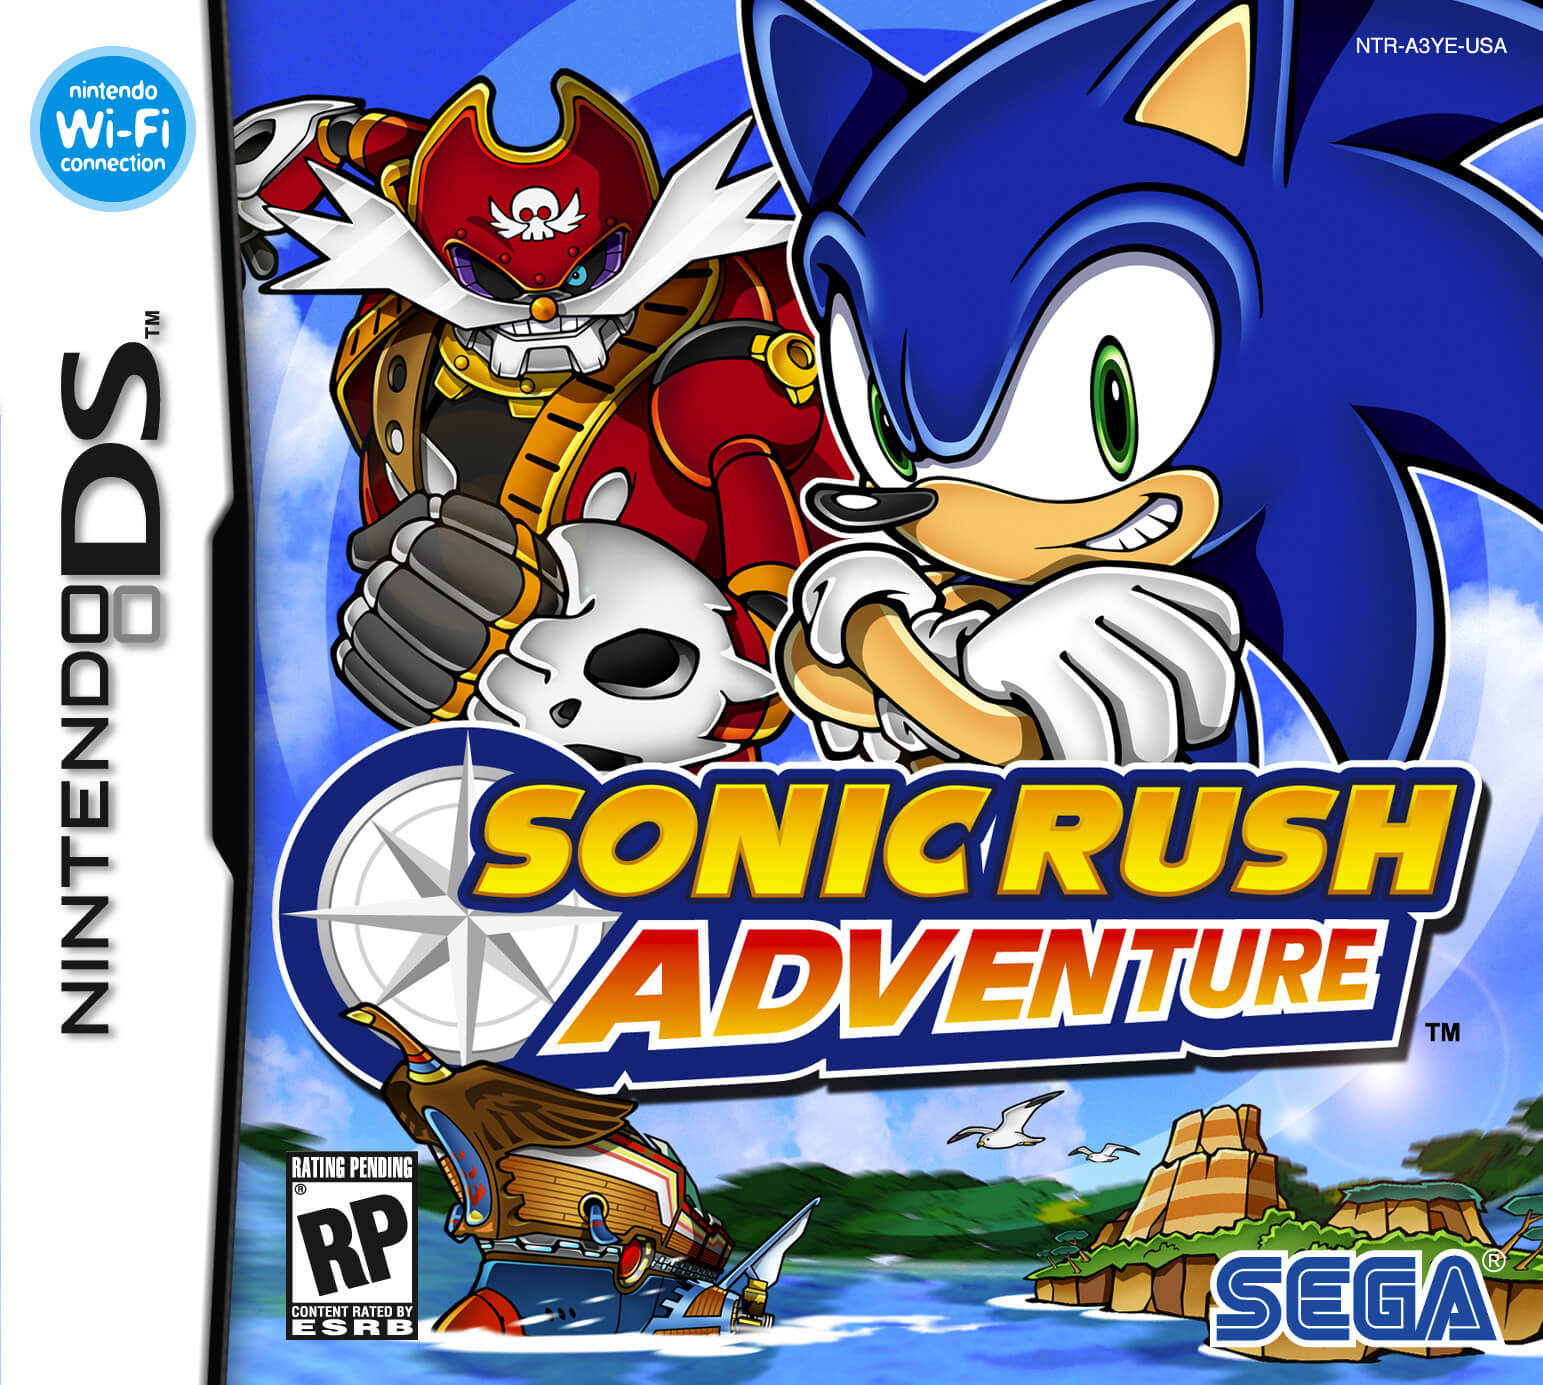 Sonic Rush Adventure - NDS ROM - Nintendo DS Game.